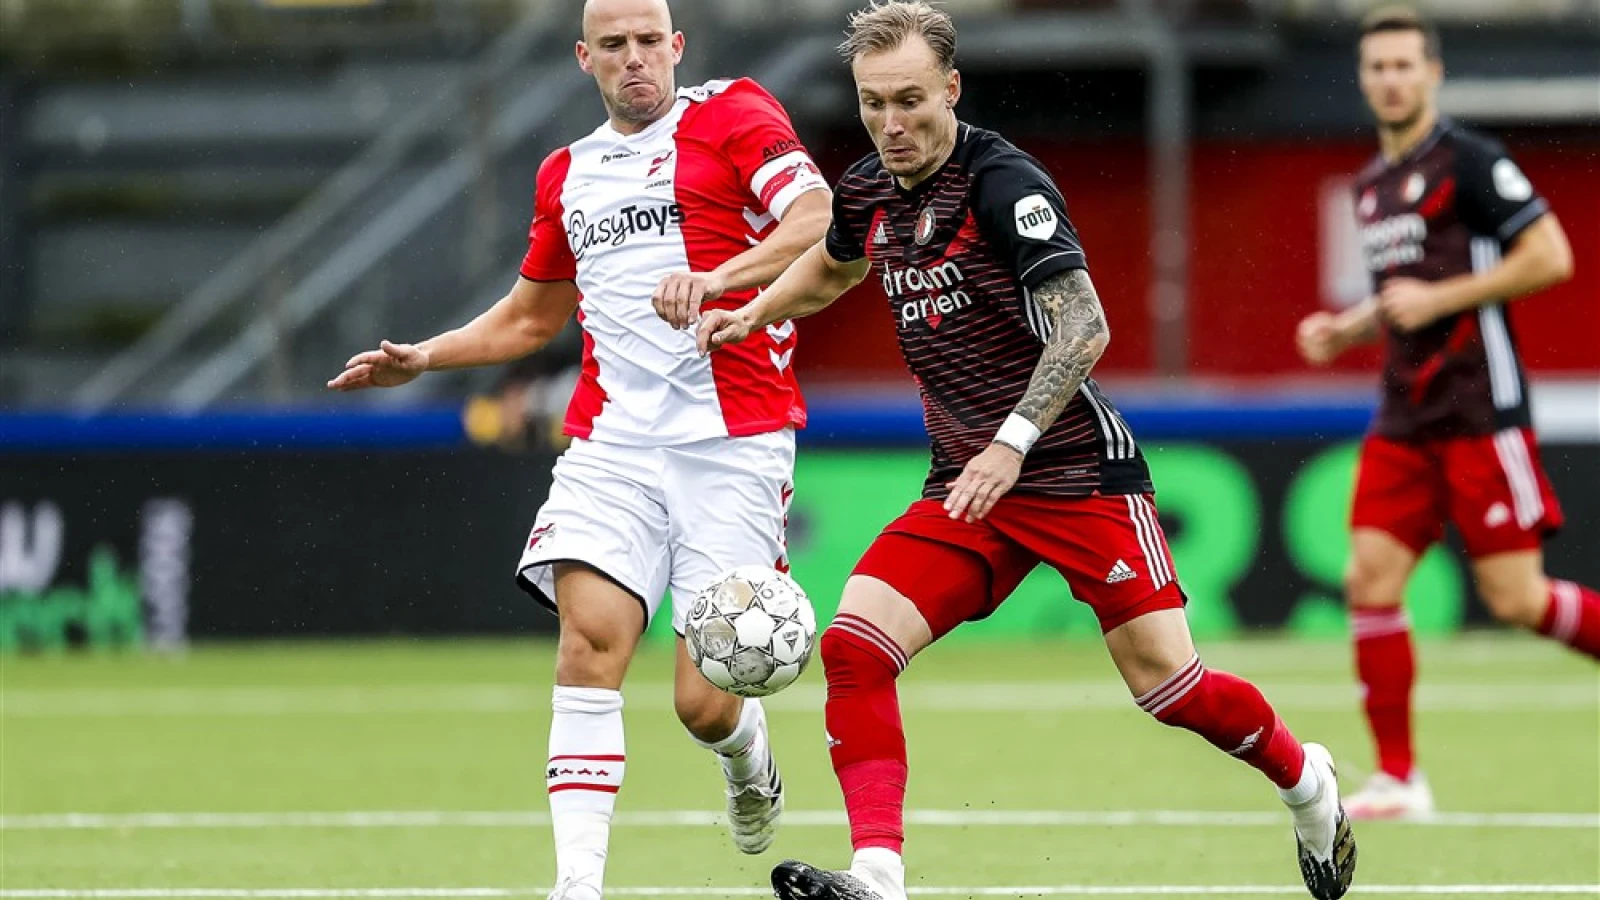 LIVE | FC Emmen - Feyenoord 2-3 | Einde wedstrijd